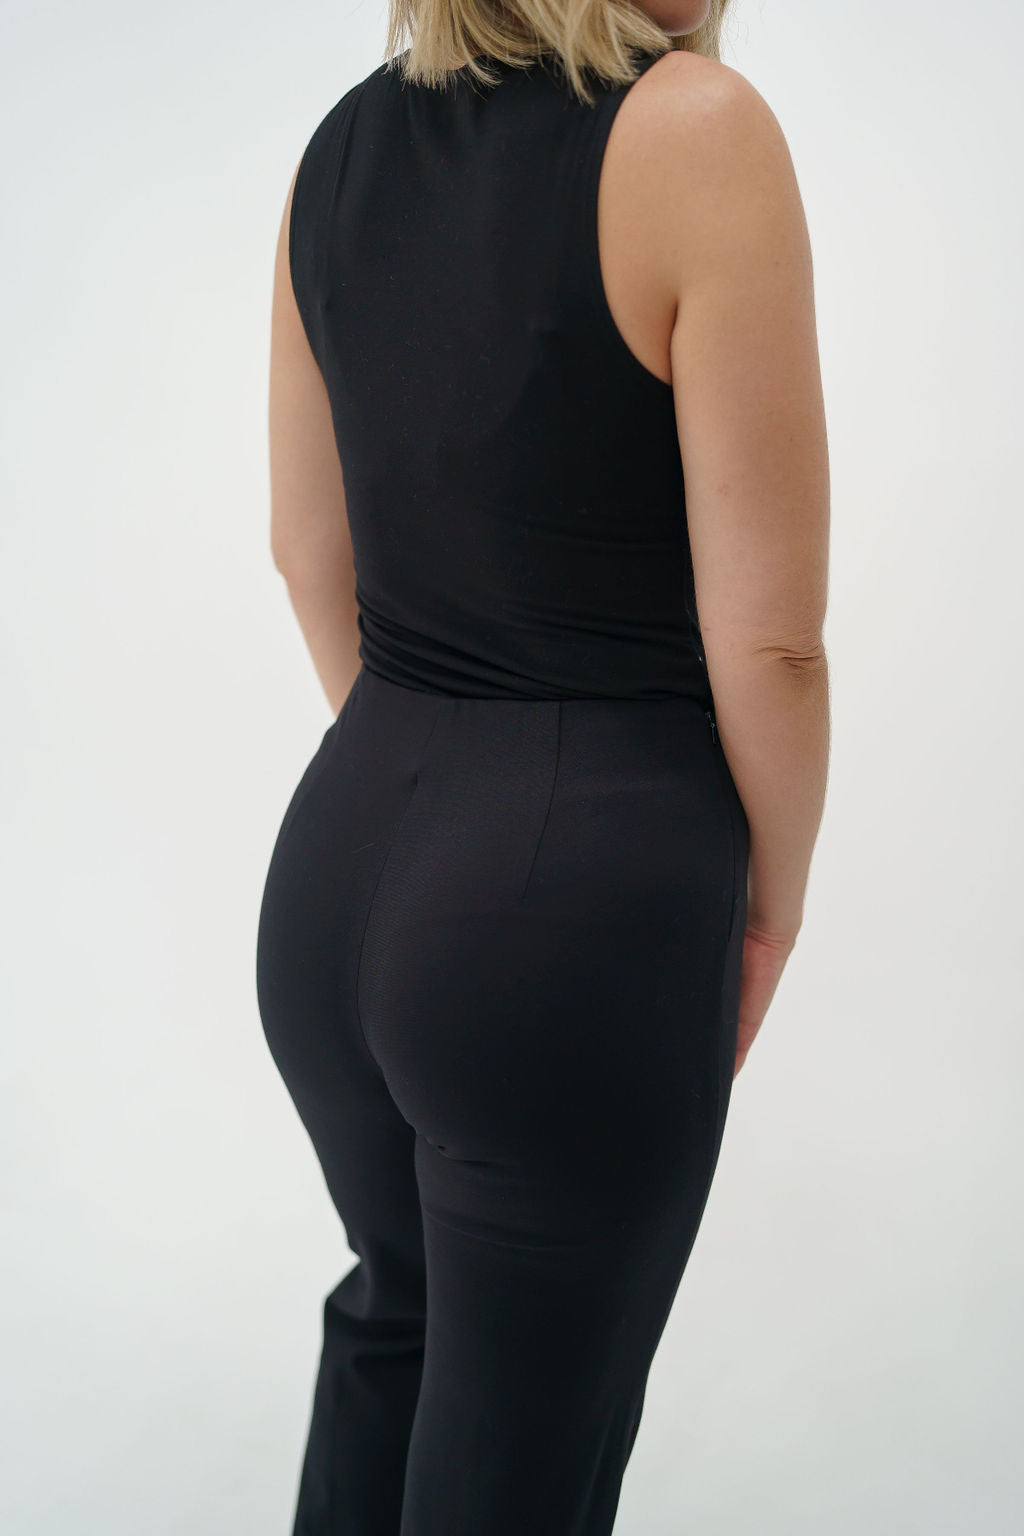 bodysuit for tall women